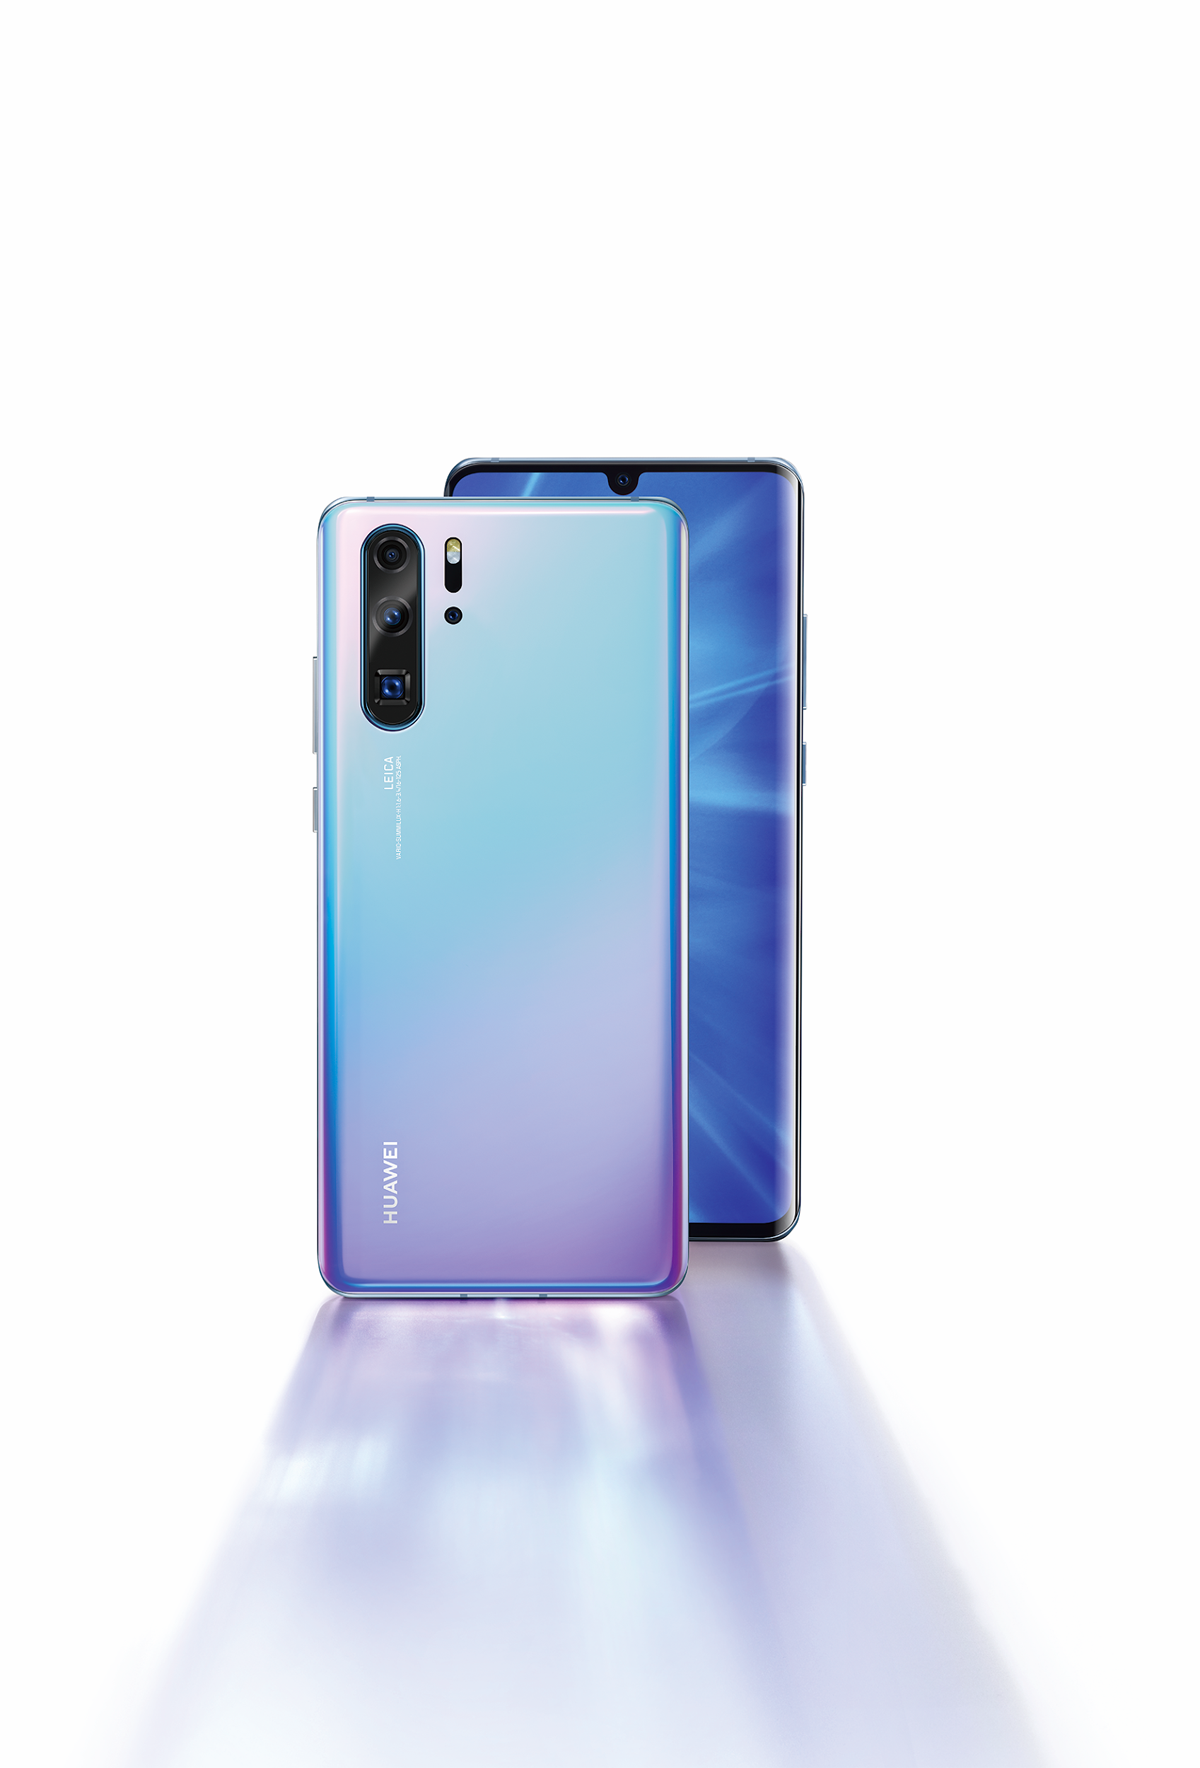 P30 Pro là flagship đầy hứa hẹn của Huawei trong năm 2019